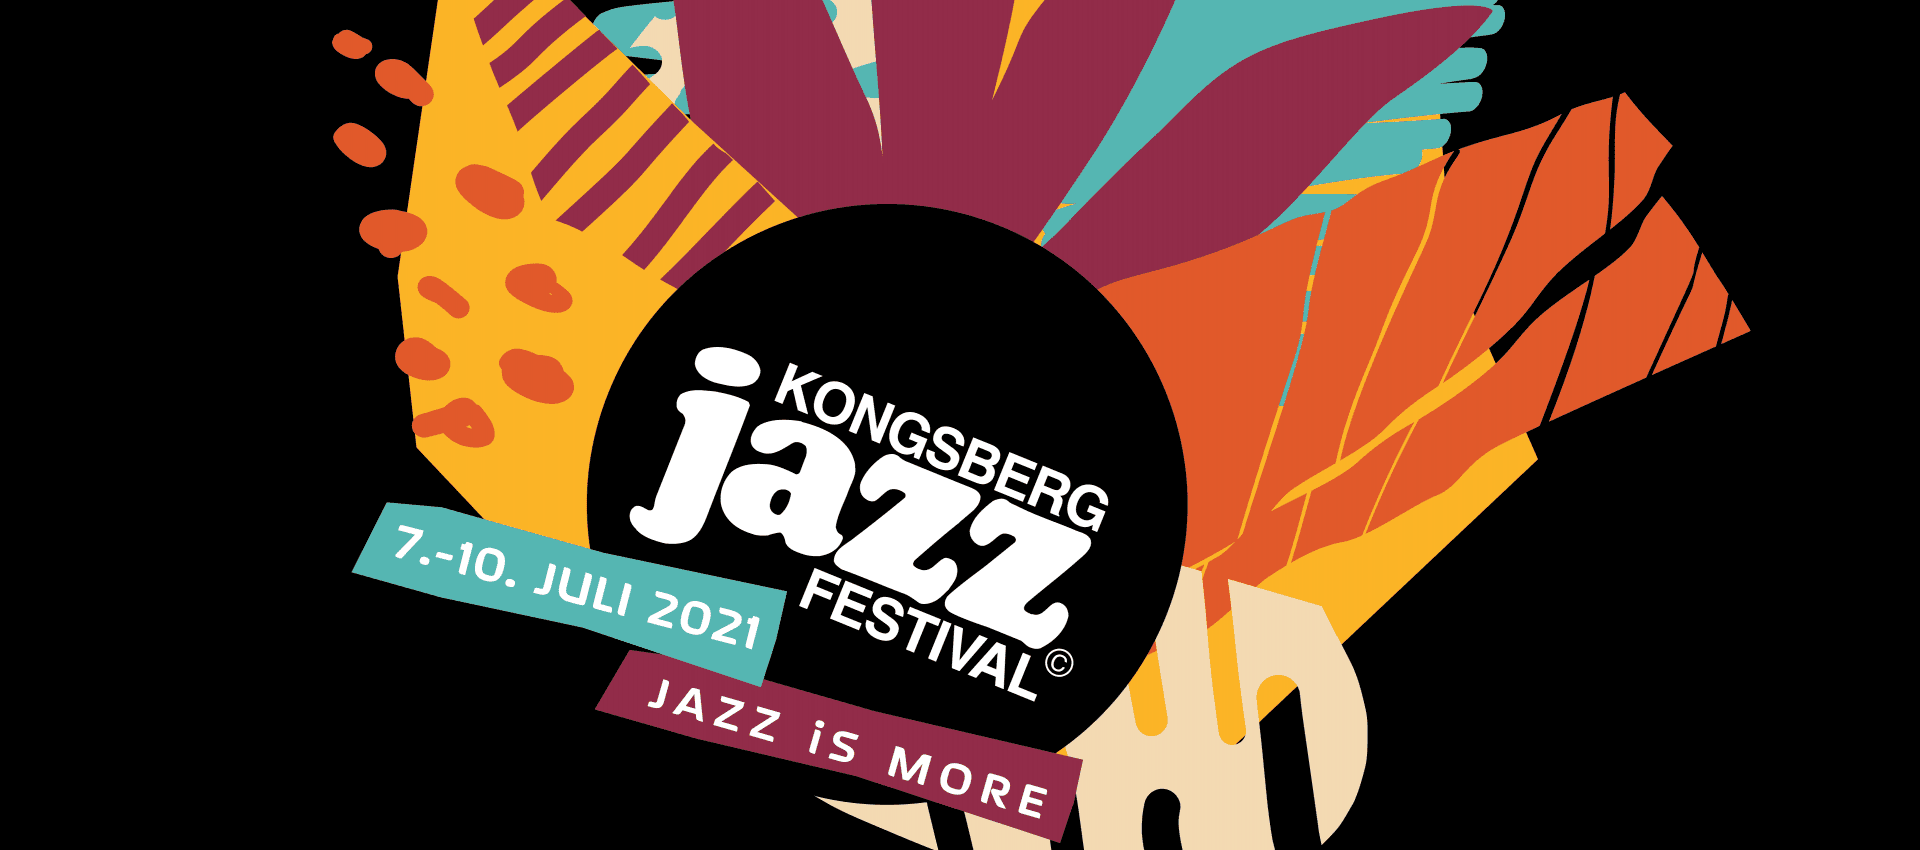 Kongsberg Jazzfestival 2024 festival in Norway